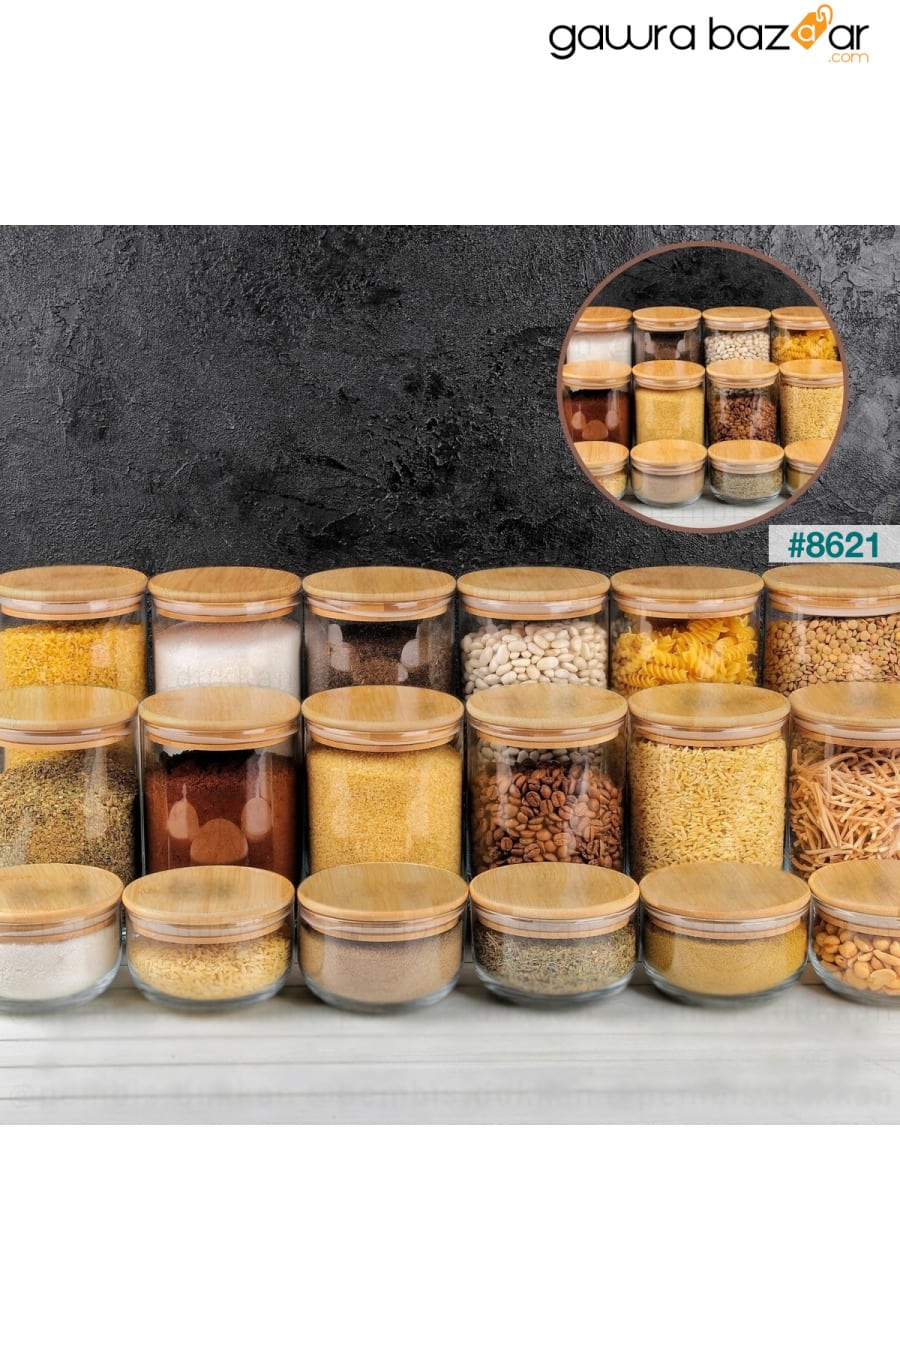 18 قطعة مرطبان زجاجي مفرغ بغطاء خشبي وحاوية لتخزين الطعام Karçiçeği Home 0